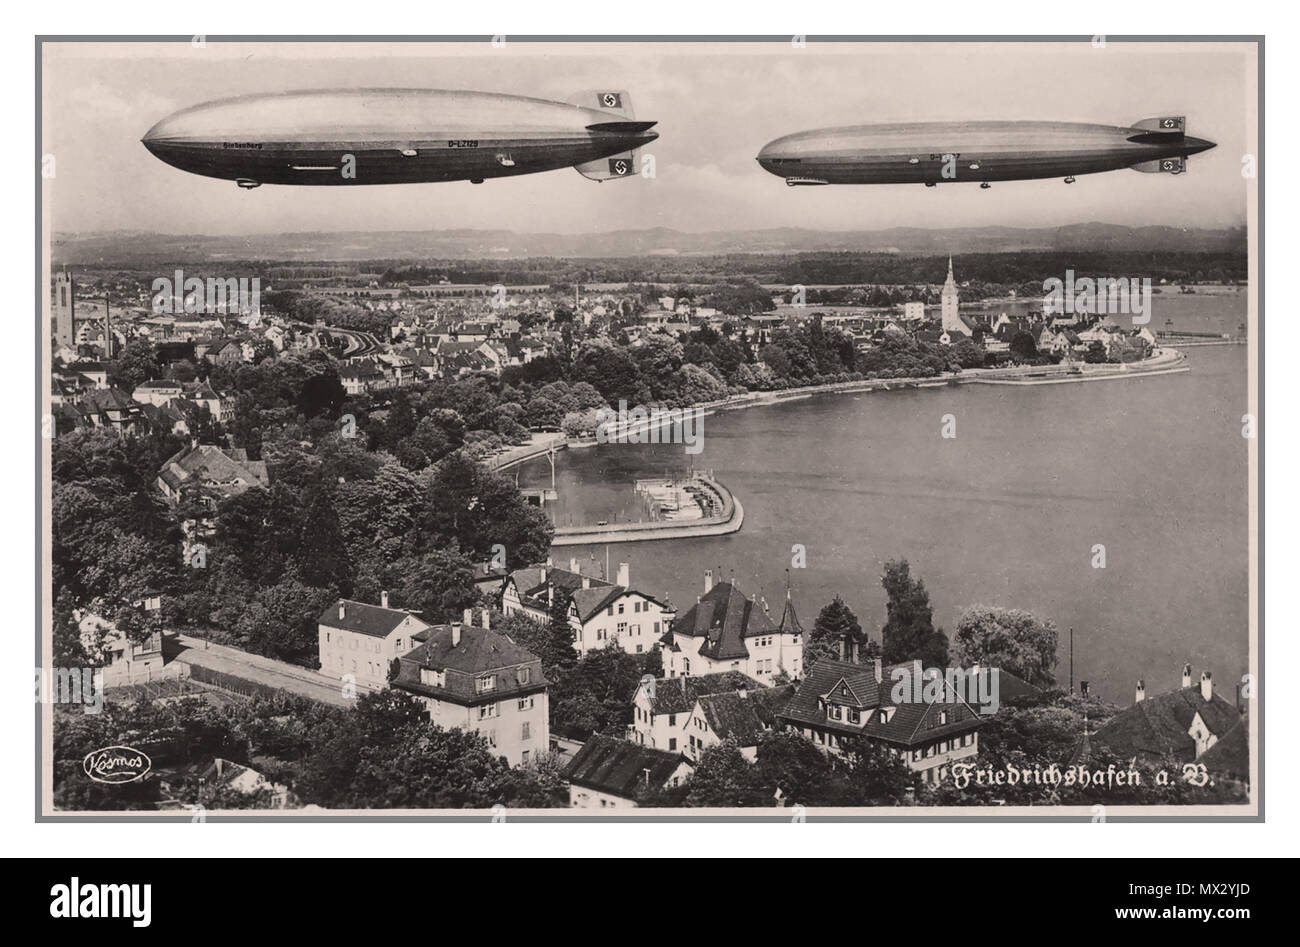 1936 Carte postale de propagande nazi allemand doté de deux dirigeables Zeppelin en vol au dessus de Friedrichshafen avec les ailerons de queue Swastika la promotion de l'Allemagne nazie 1936 Jeux Olympiques. Friedrichshafen est surtout connu pour avoir été la demeure du dirigeable Zeppelin Luftschiffbau base de fabrication de l'entreprise Banque D'Images